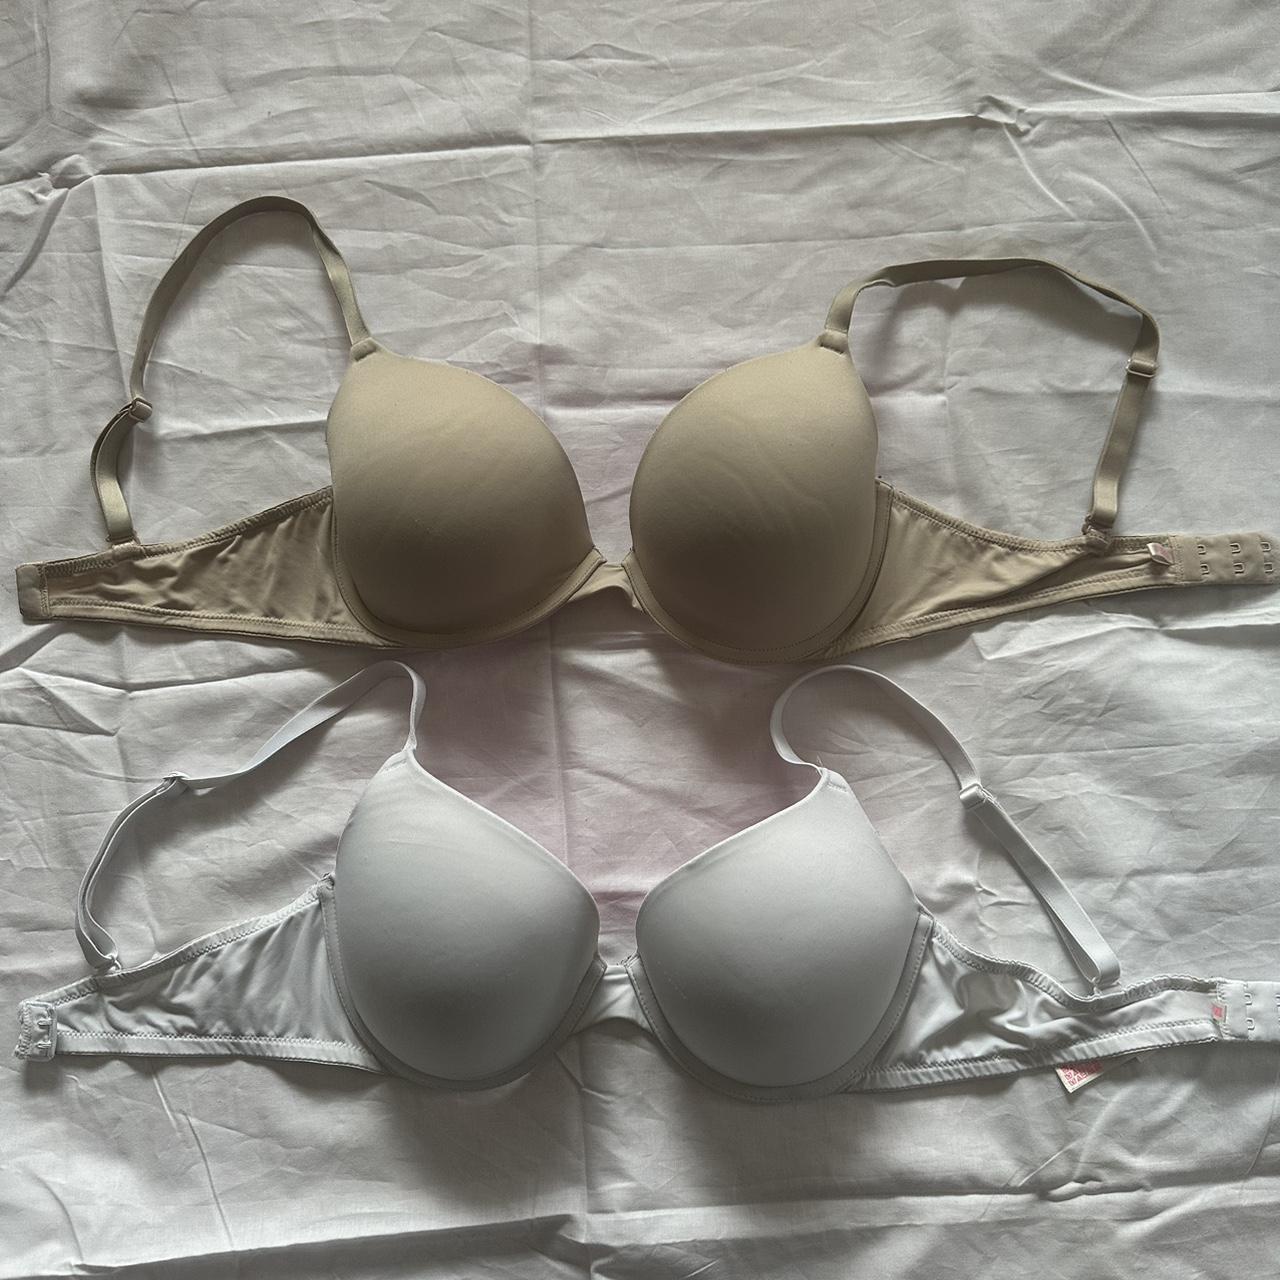 Bundle Victoria’s Secret bras! , Both size 34D, No